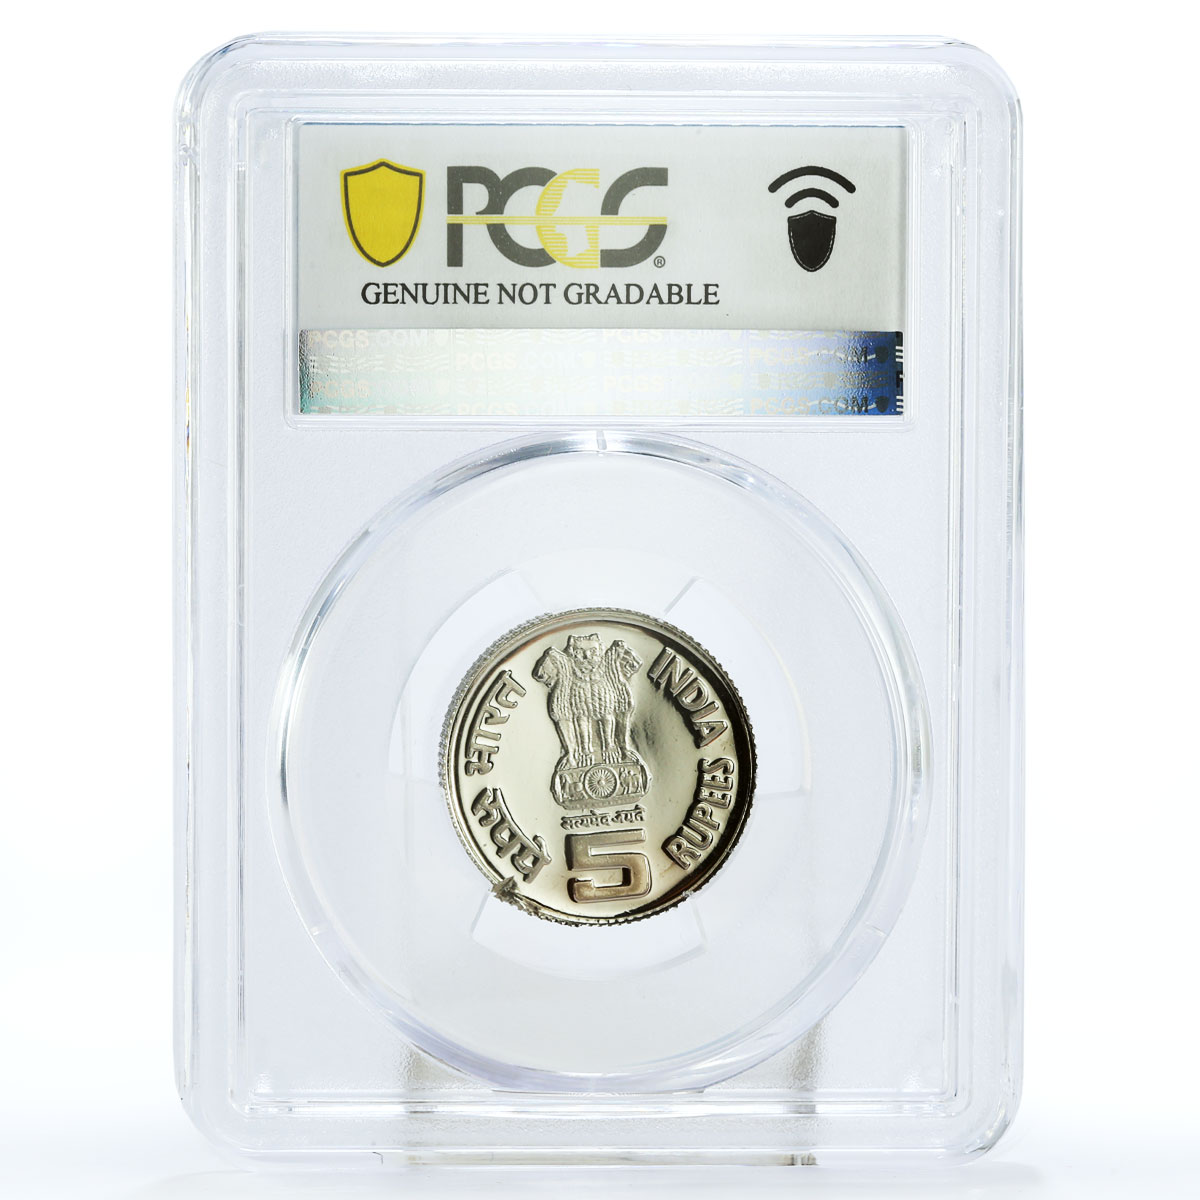 India 5 rupees Premier Minister Lal Bahadur Shastri Genuine PCGS CuNi coin 2004